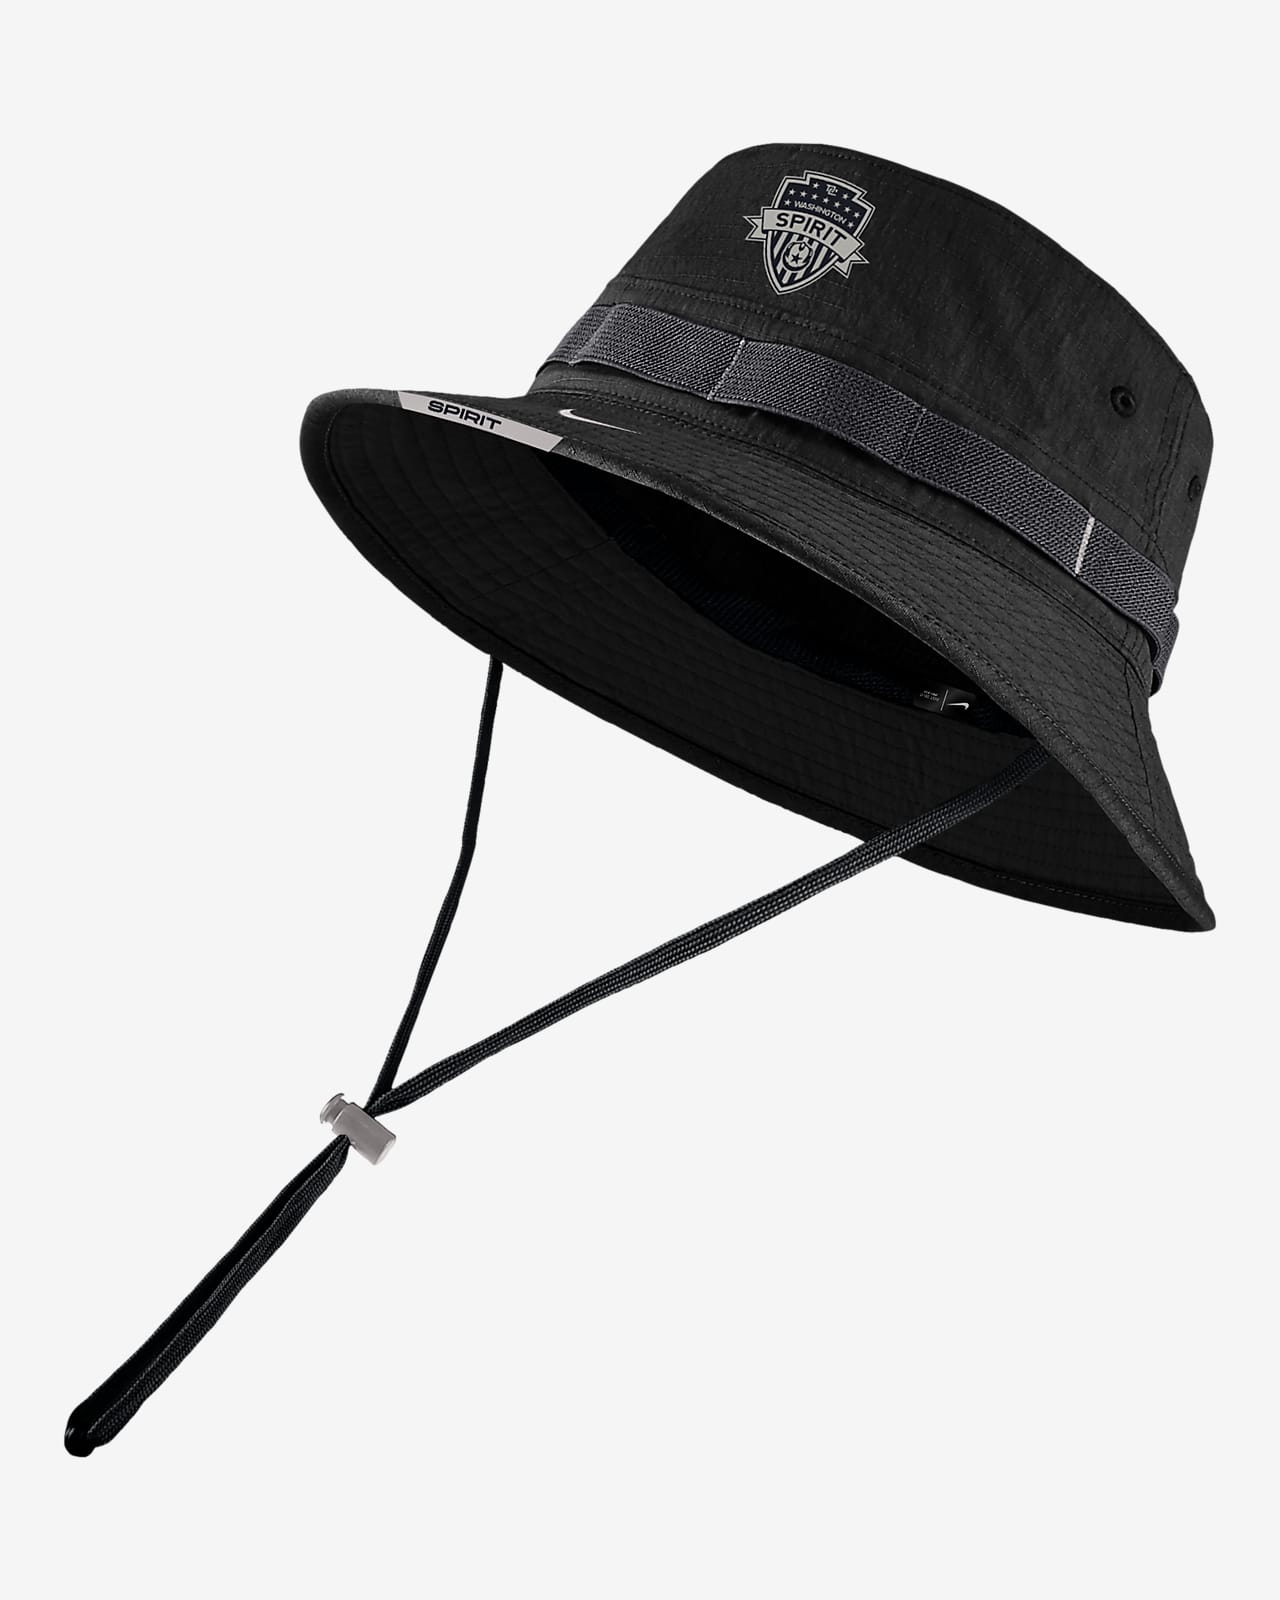  adidas Men's Victory 4 Bucket Hat, Black, Small-Medium